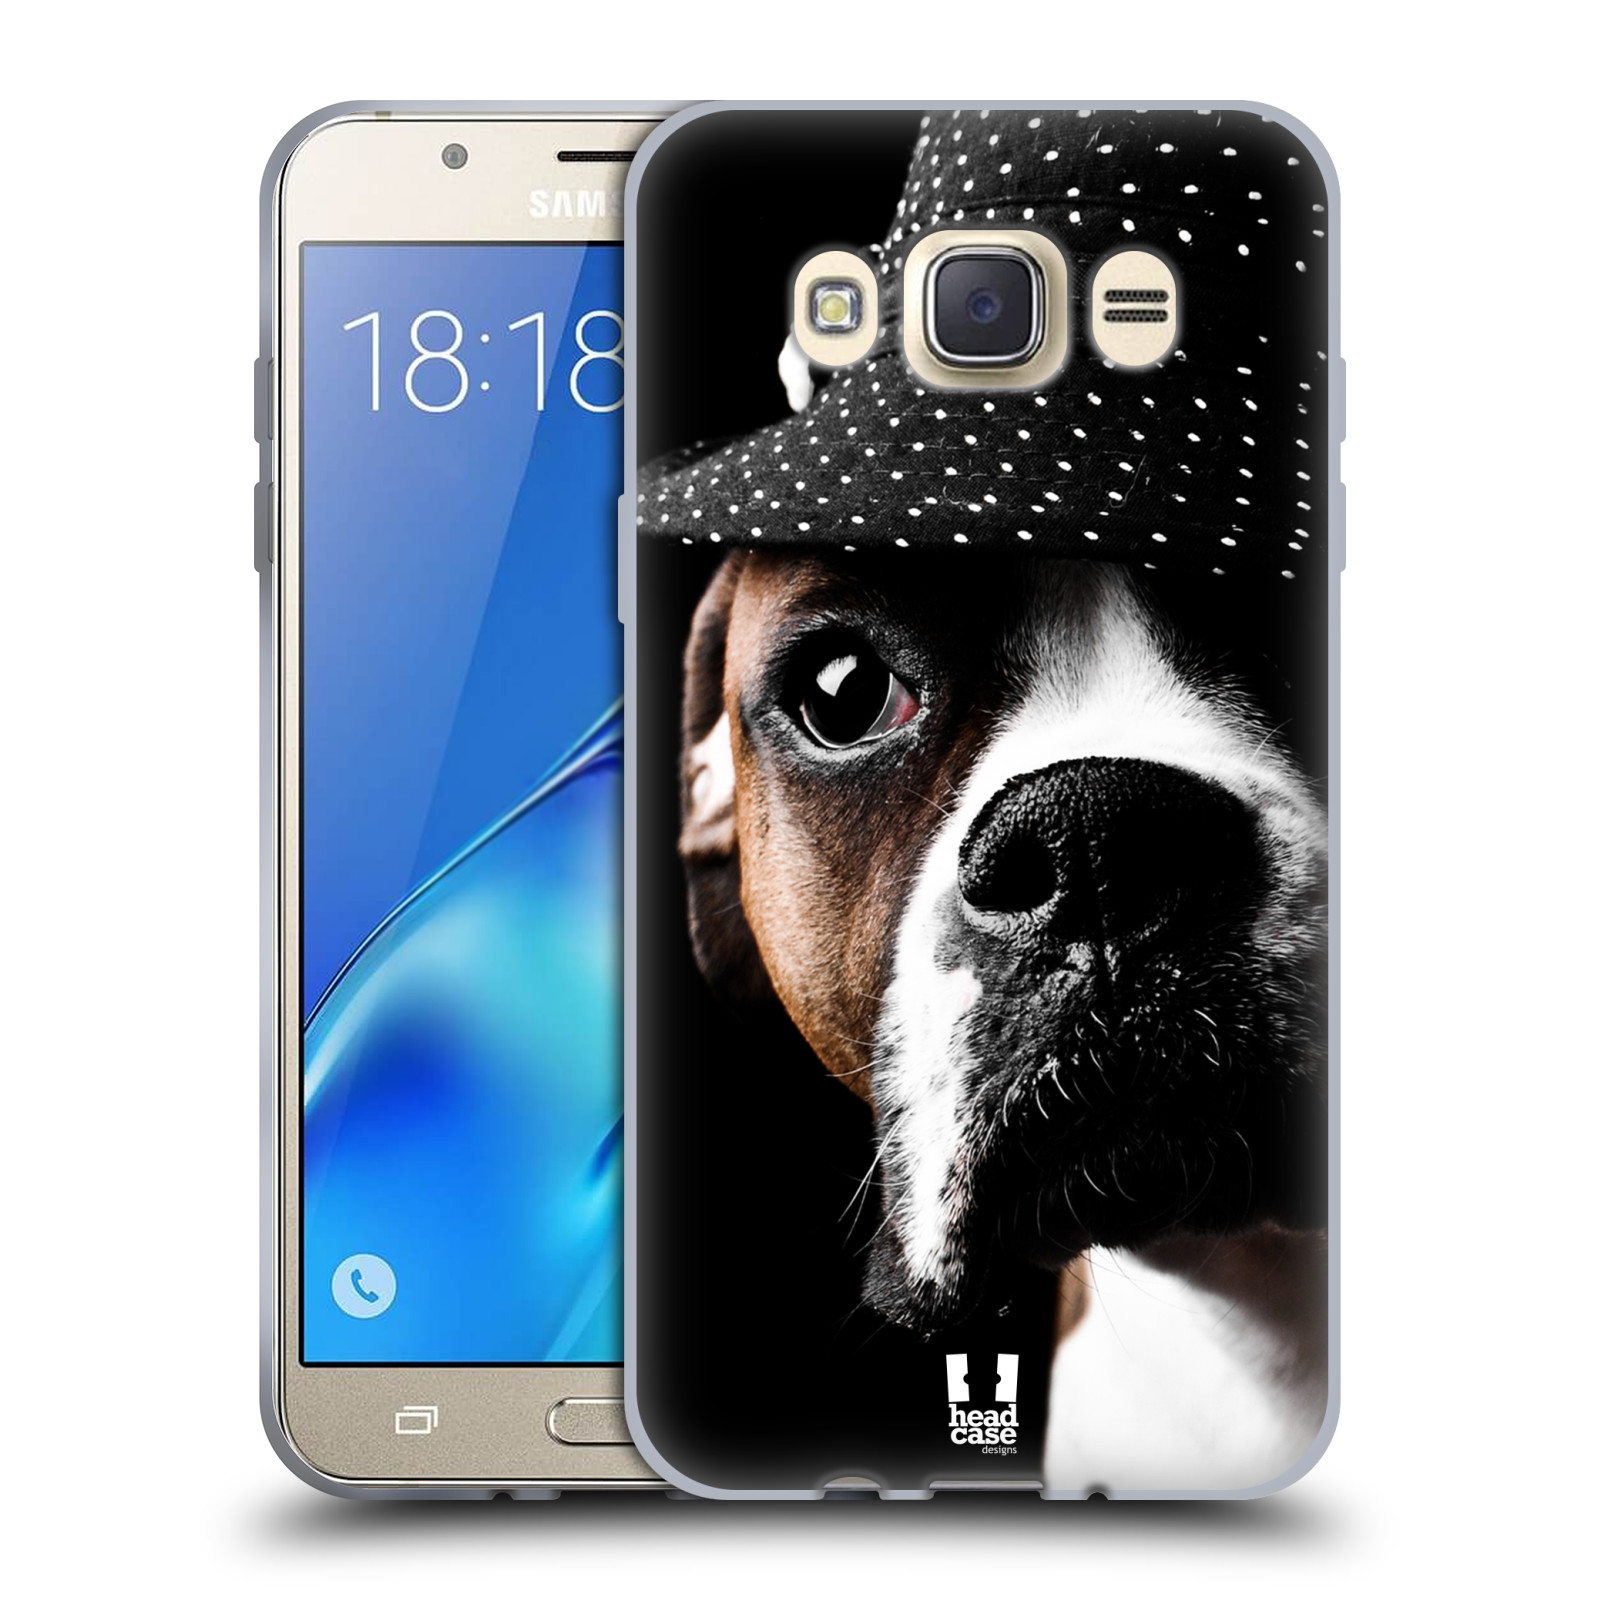 HEAD CASE silikonový obal, kryt na mobil Samsung Galaxy J7 2016 (J710, J710F) vzor Legrační zvířátka pejsek frajer